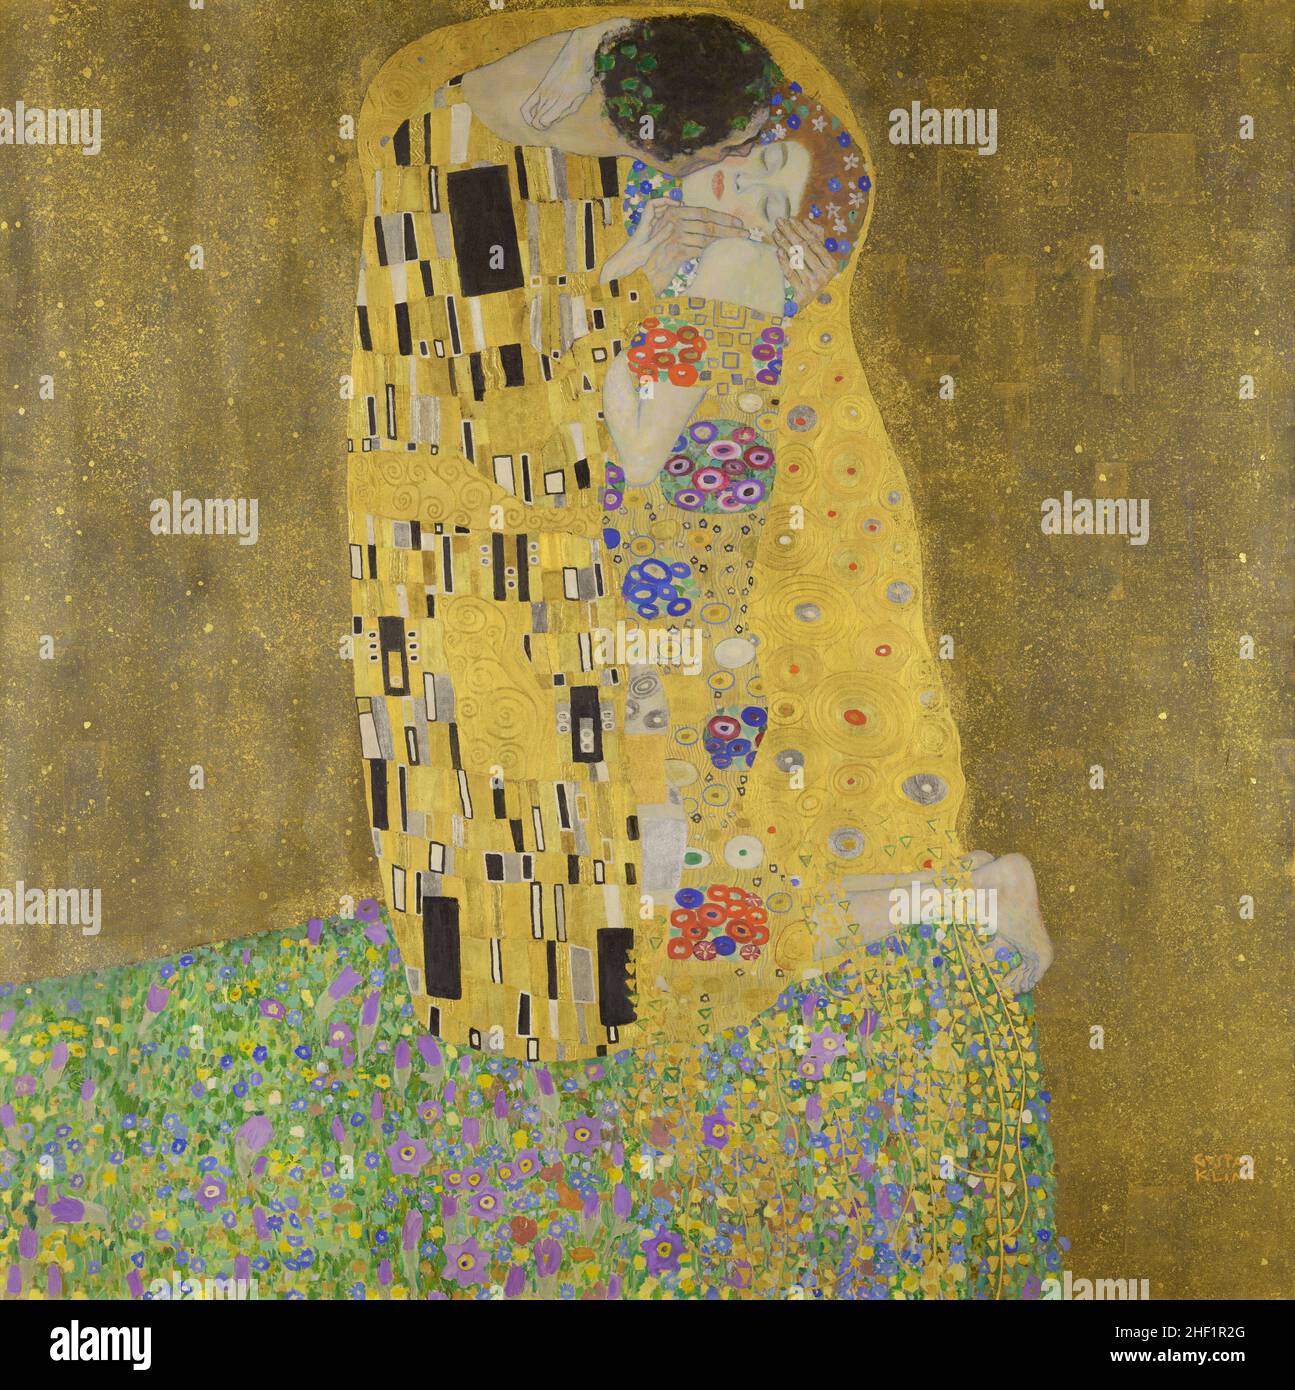 XAM601 der Kuss, 1907-08 (Öl auf Leinwand) von Klimt, Gustav (1862-1918); 180x180 cm; Osterreichische Galerie Belvedere, Wien, Österreich. Stockfoto